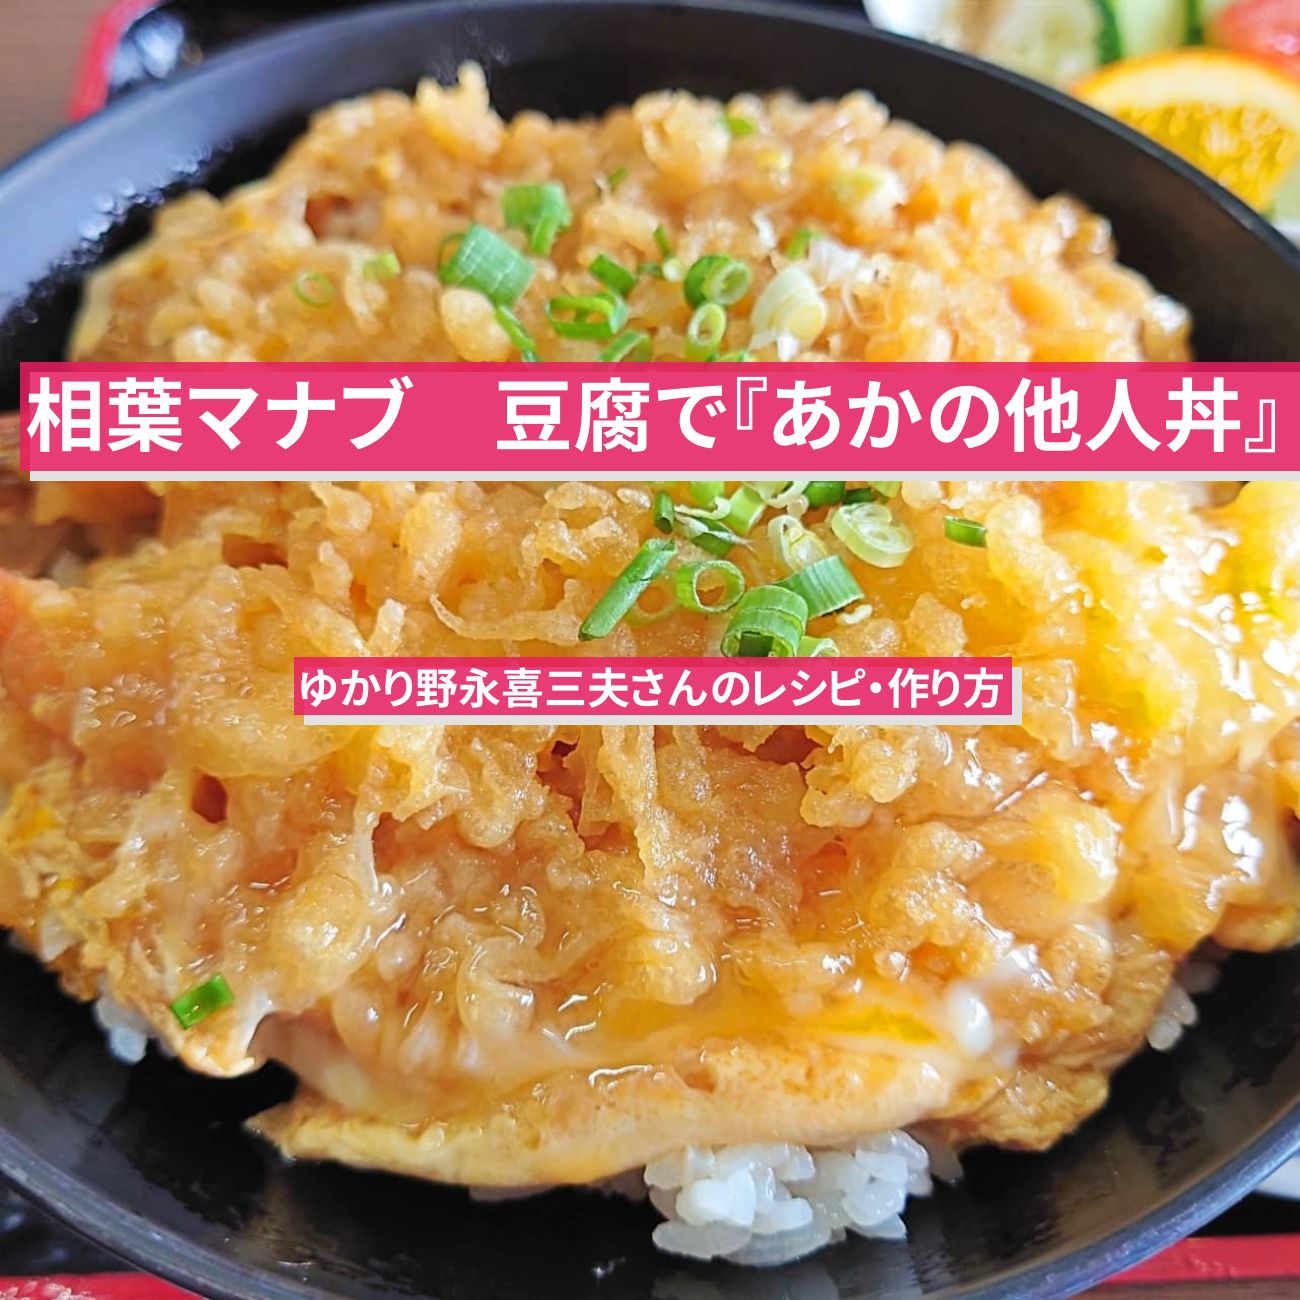 【相葉マナブ】豆腐で『あかの他人丼』ゆかり野永喜三夫さんのレシピ・作り方